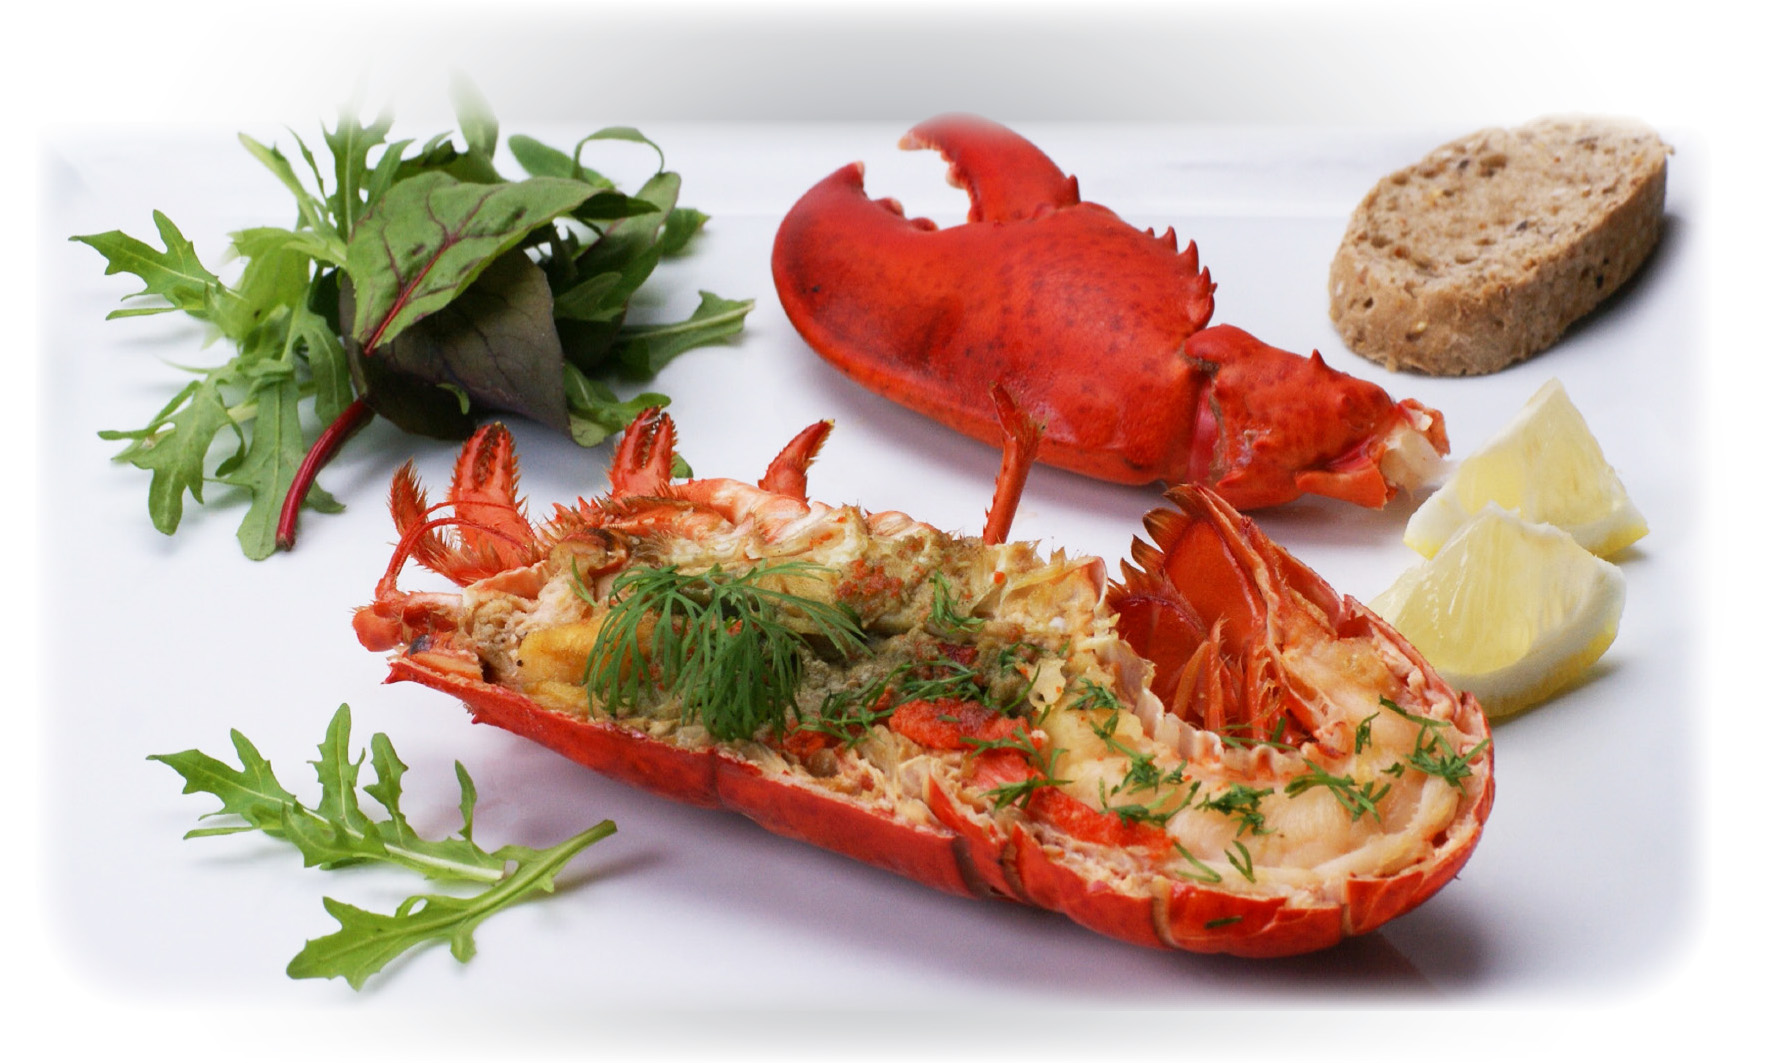 Blank bånd Tilgængelig Shellfish - Recipes DK Oven-baked Maine lobster with garlic butter and salad